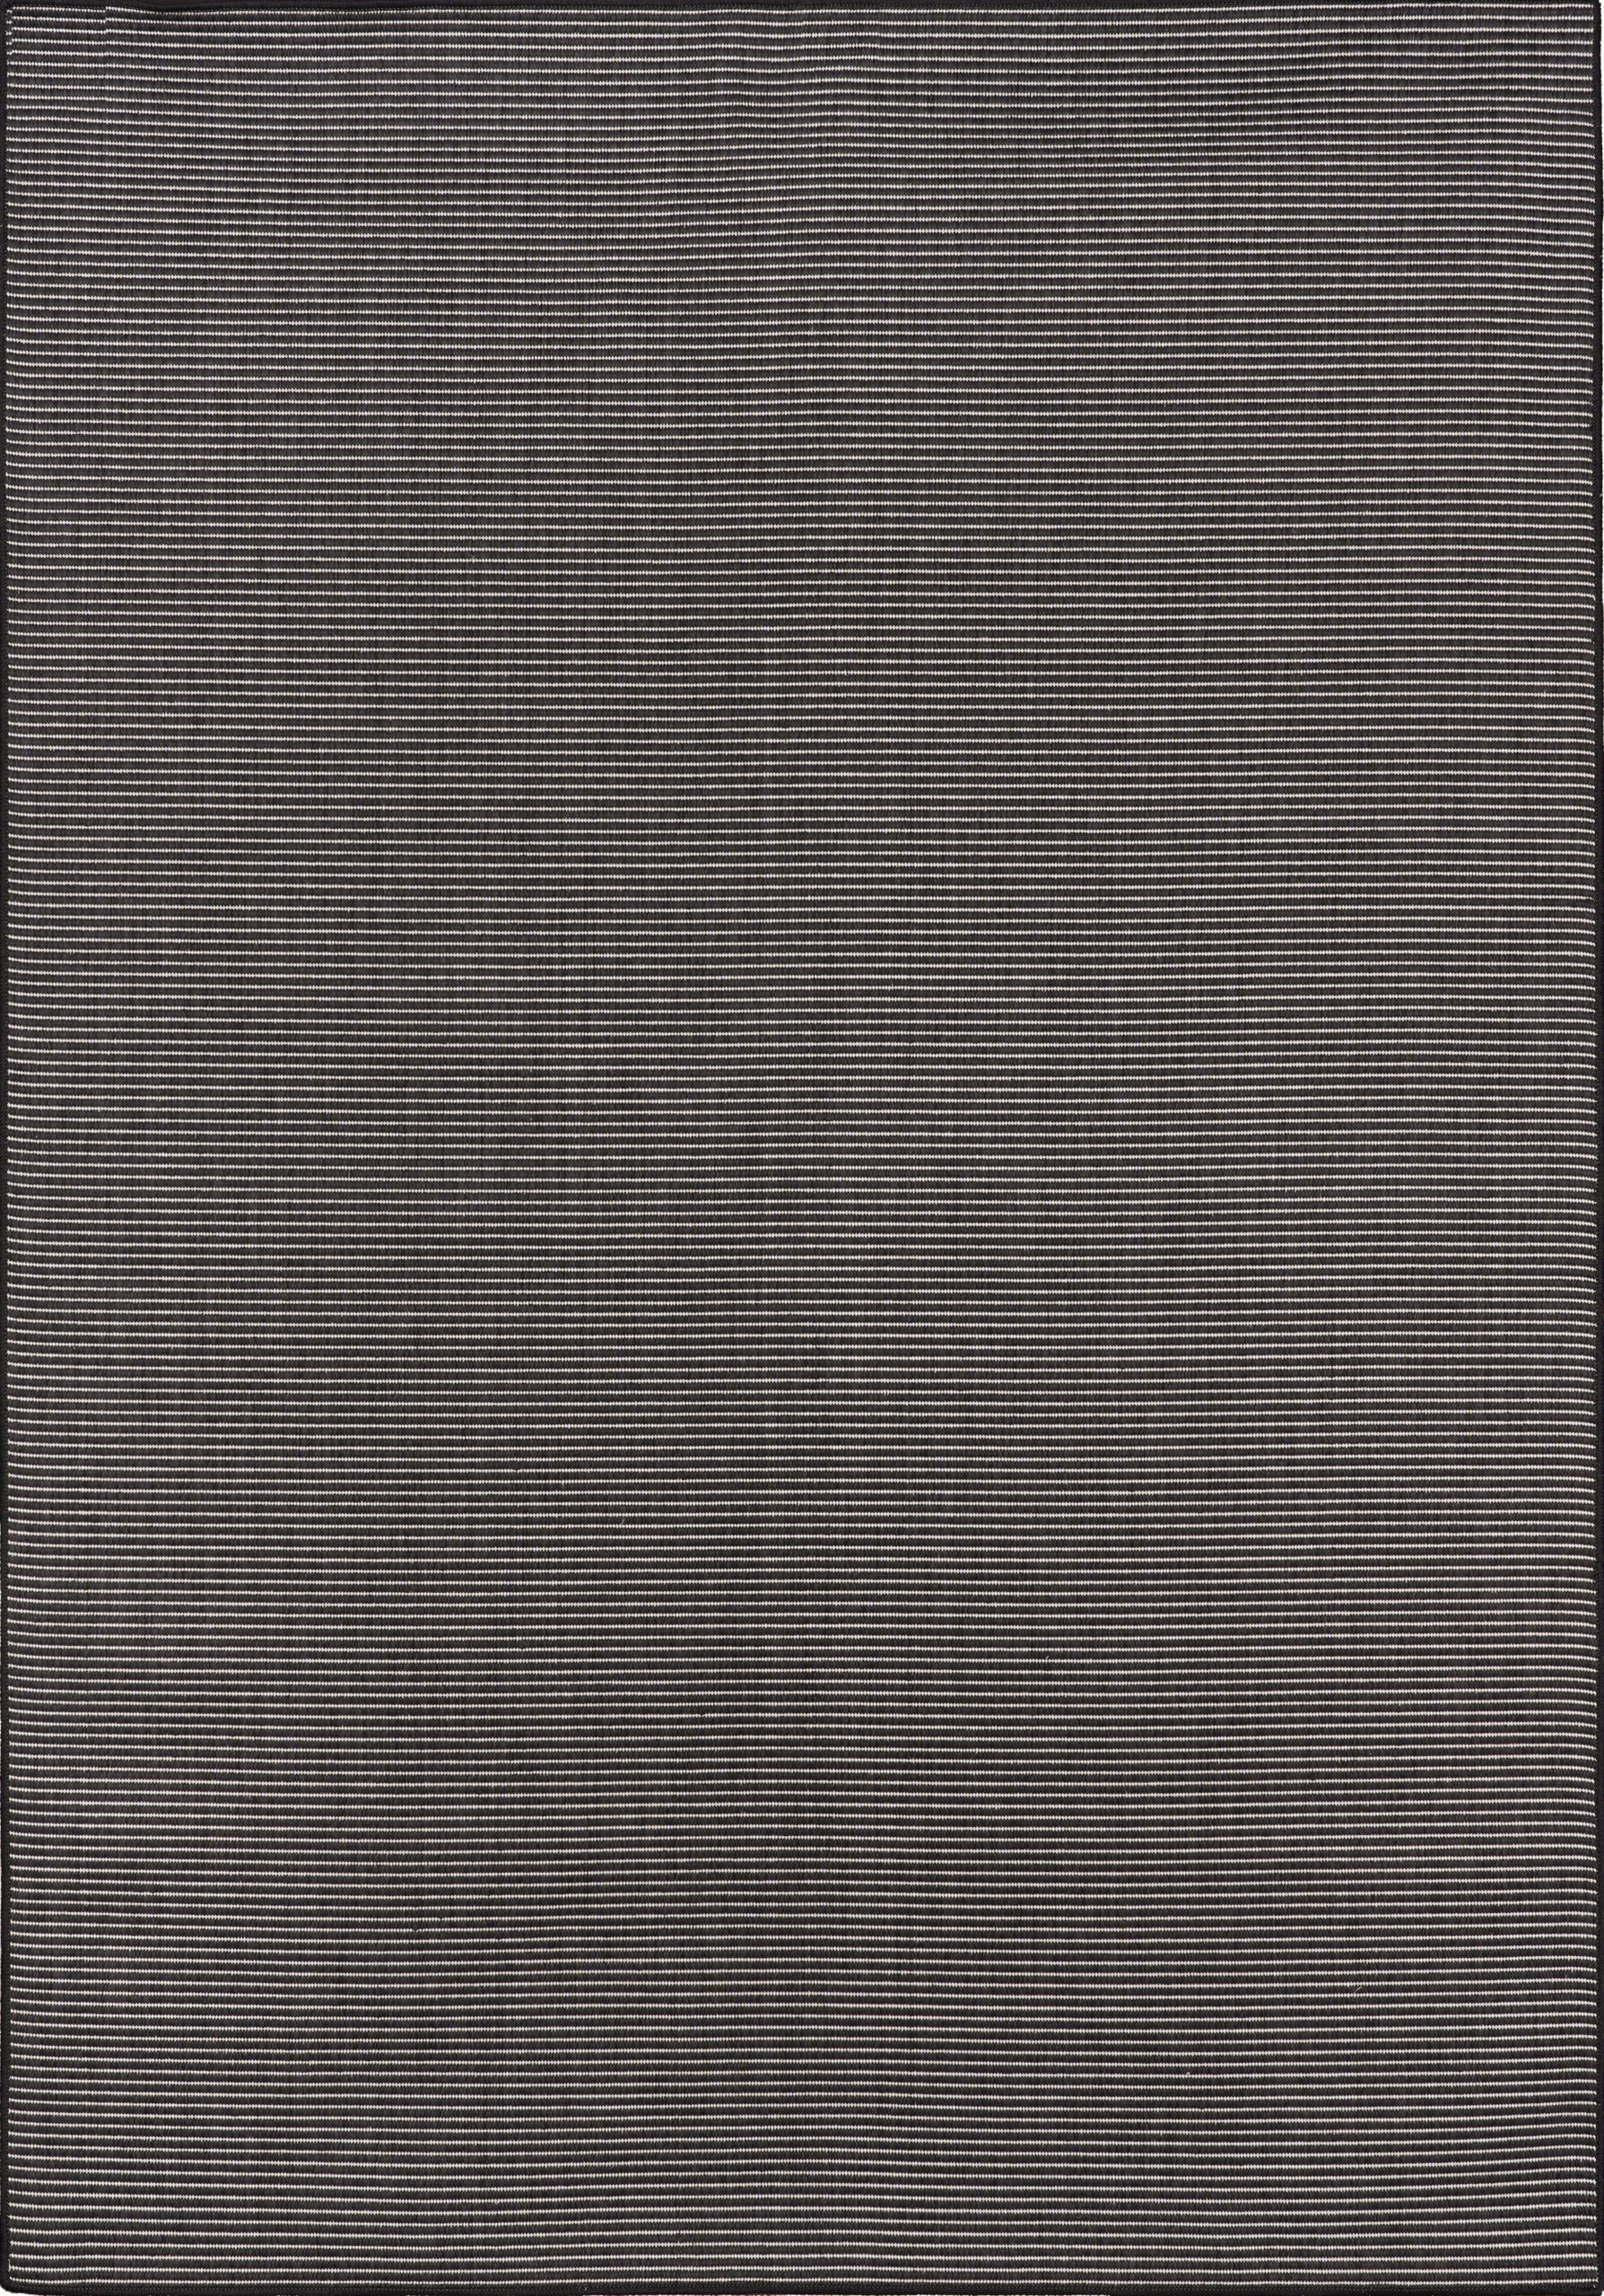 Χαλί 4 εποχών άσπρη μαύρη ψάθα Maestro 9002-90 - 1,40x2,00 Colore Colori